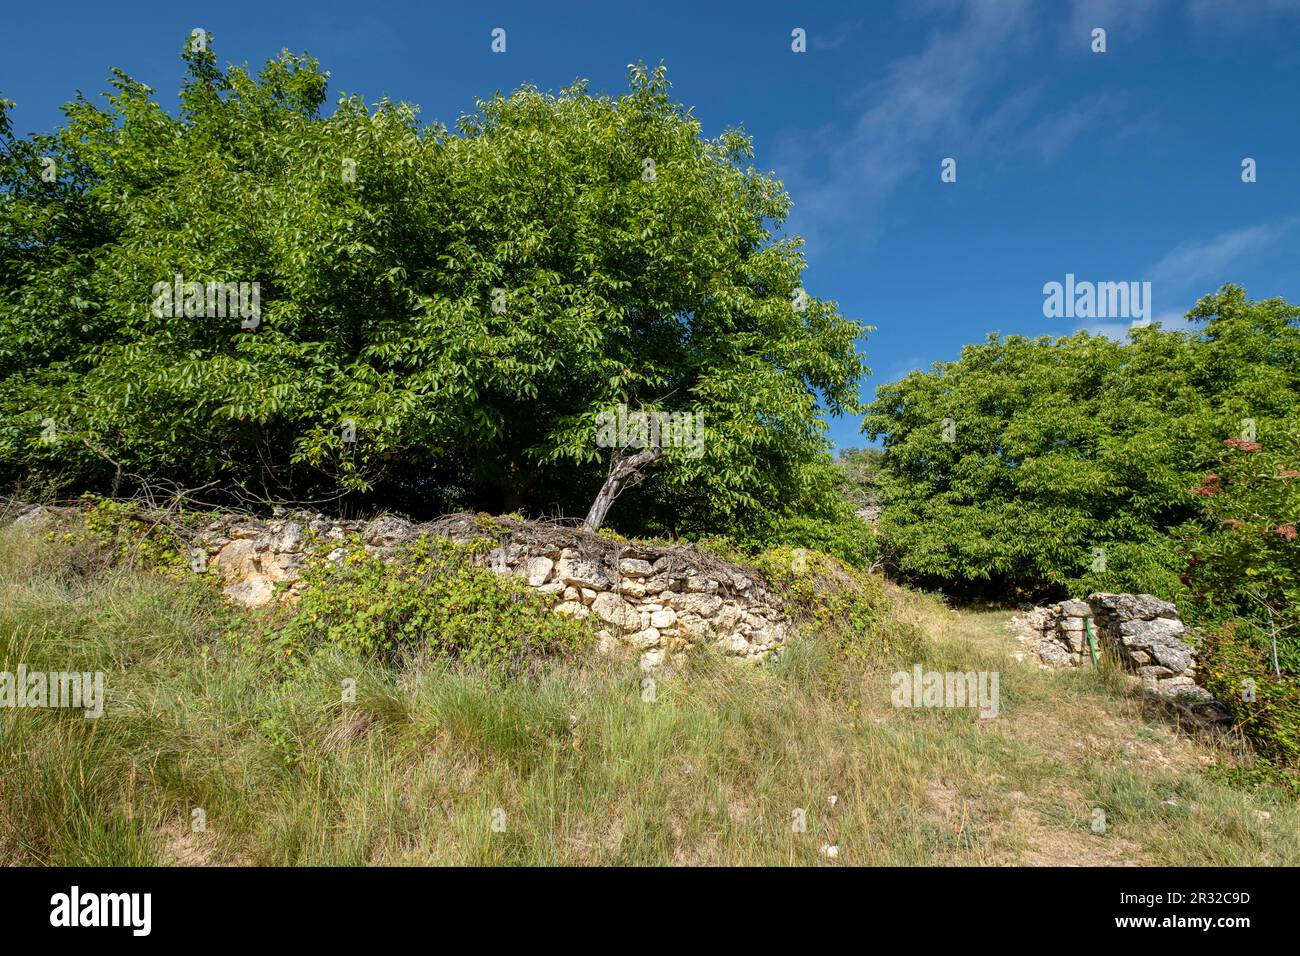 nogal, Juglans regia, barranco de la cascada, Chaorna, Soria, comunidad autónoma de Castilla y León, Spain, Europe. Stock Photo